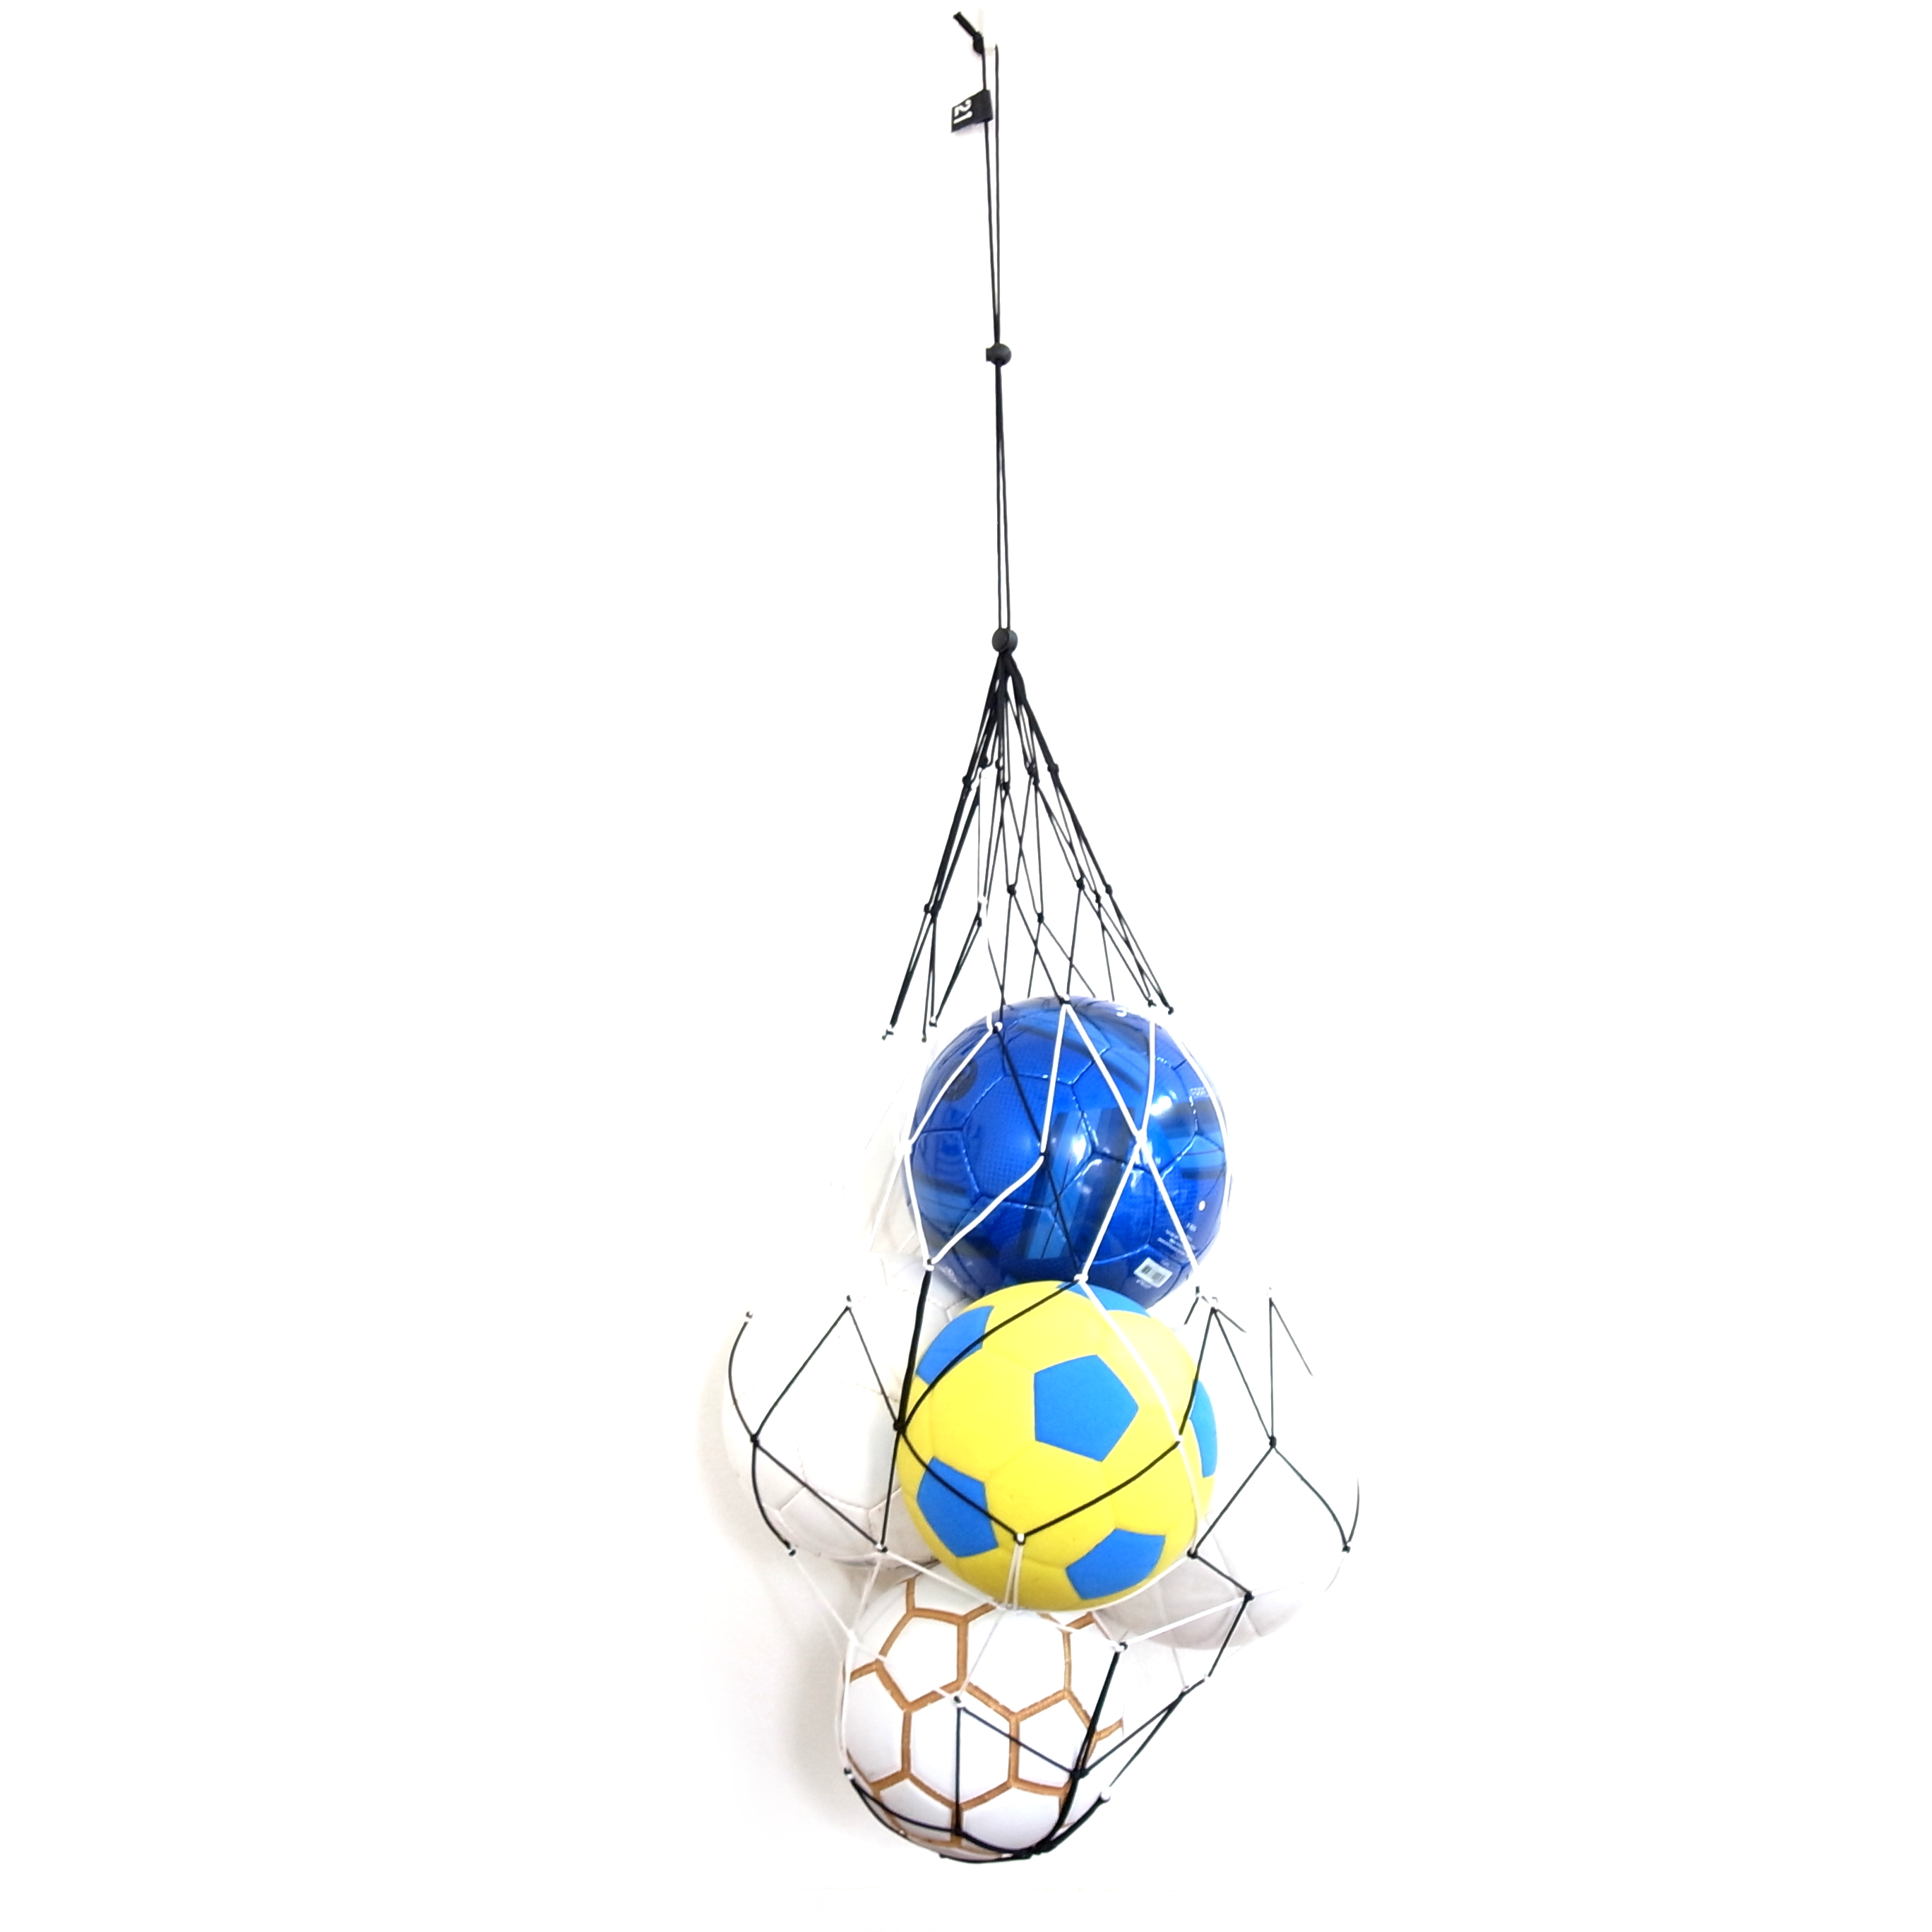 サッカーボールをおしゃれに収納するボールネット コンビ Xlサイズ ブラック ホワイト Capitan カピタン